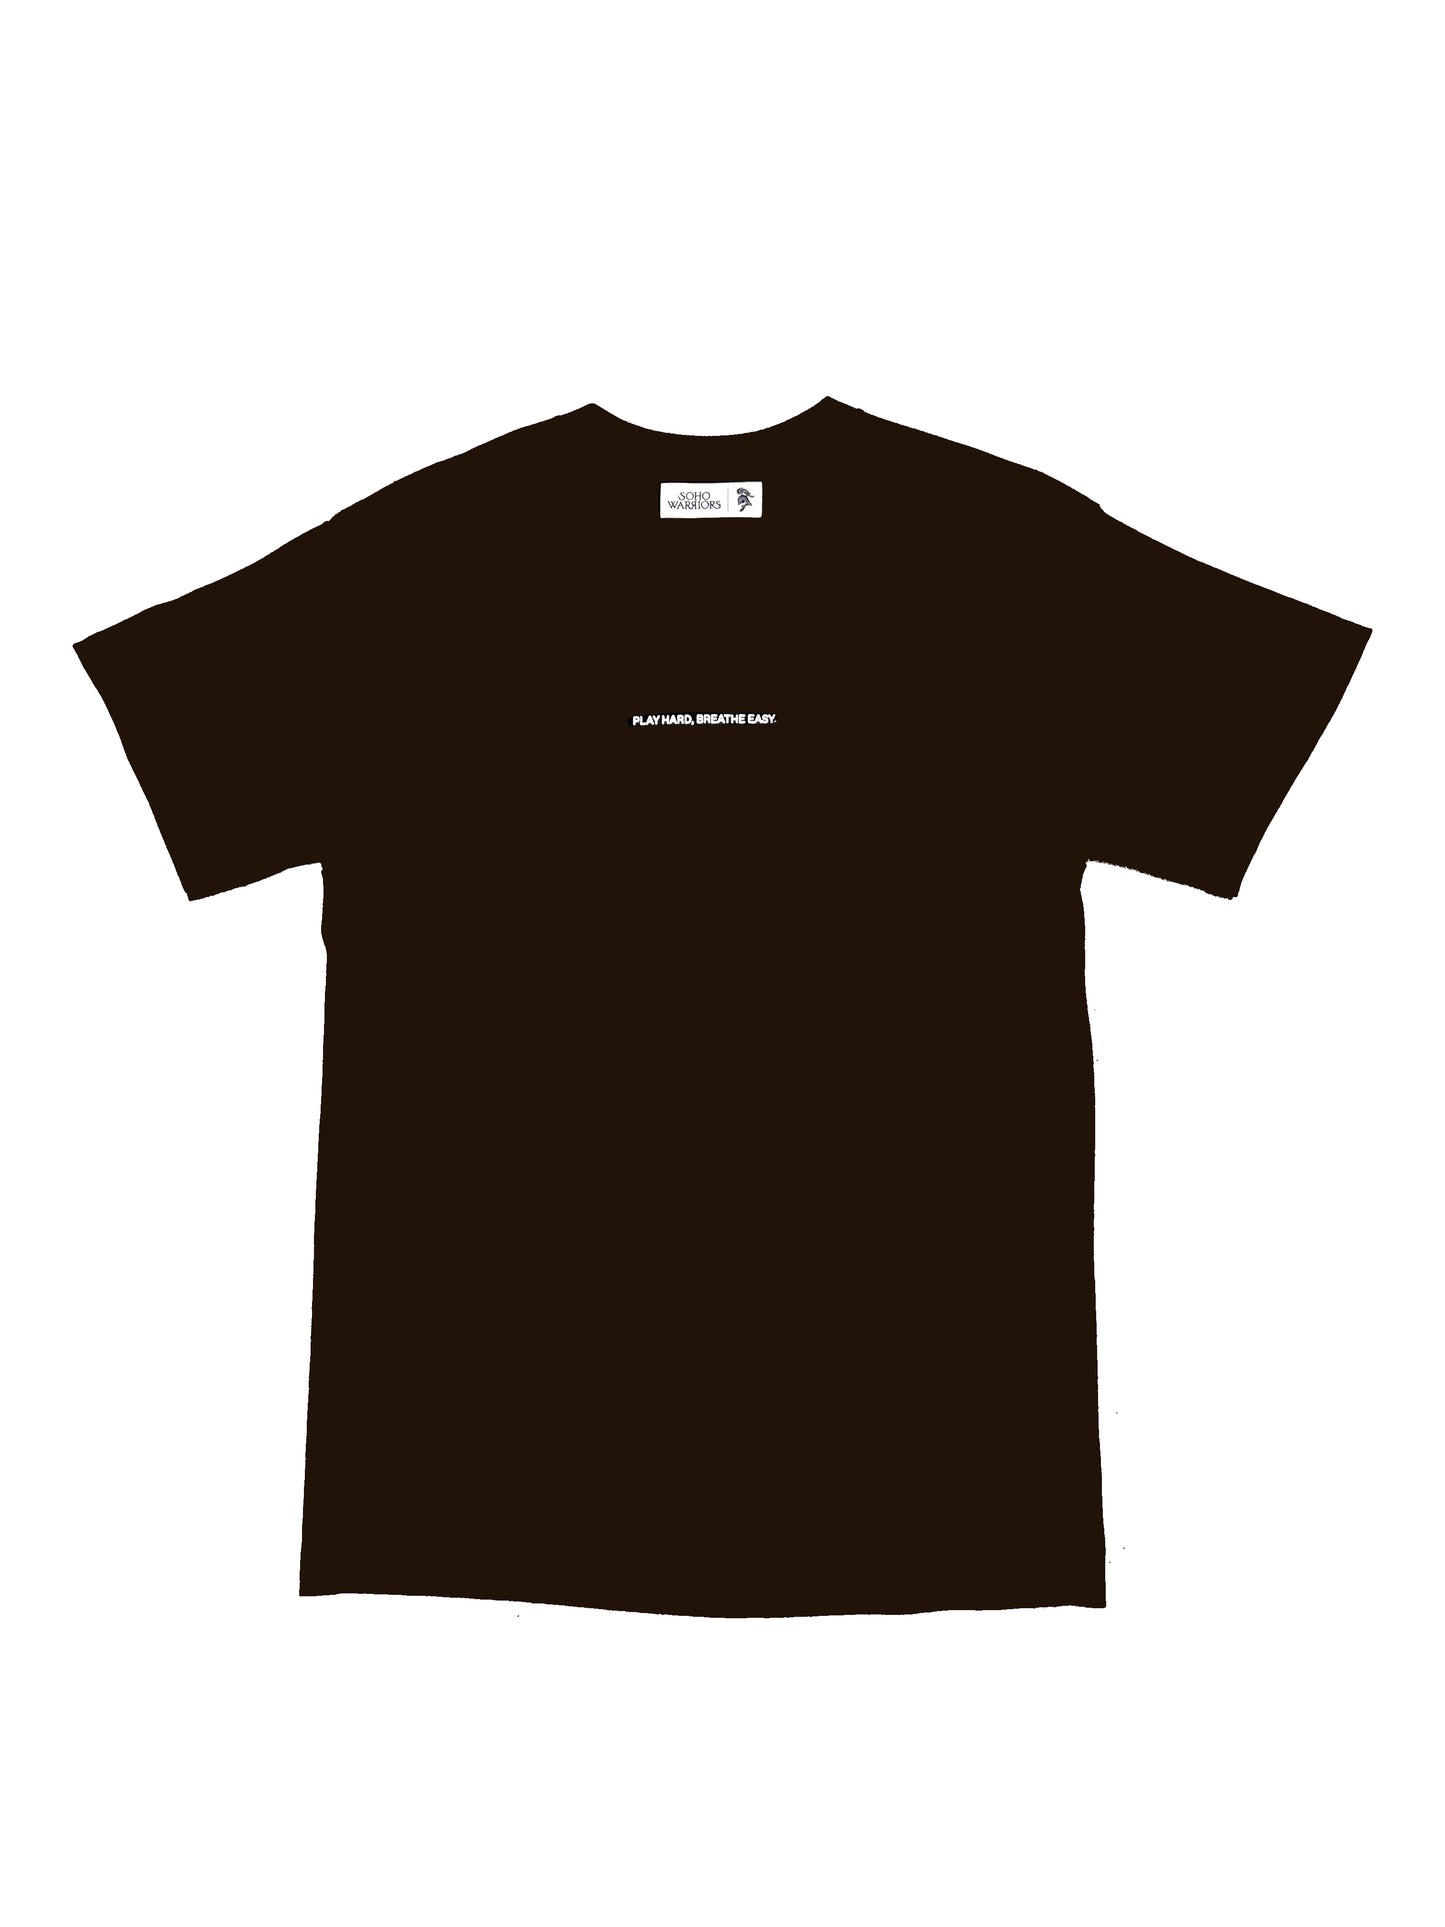 Clean Air T-Shirt (Brown)